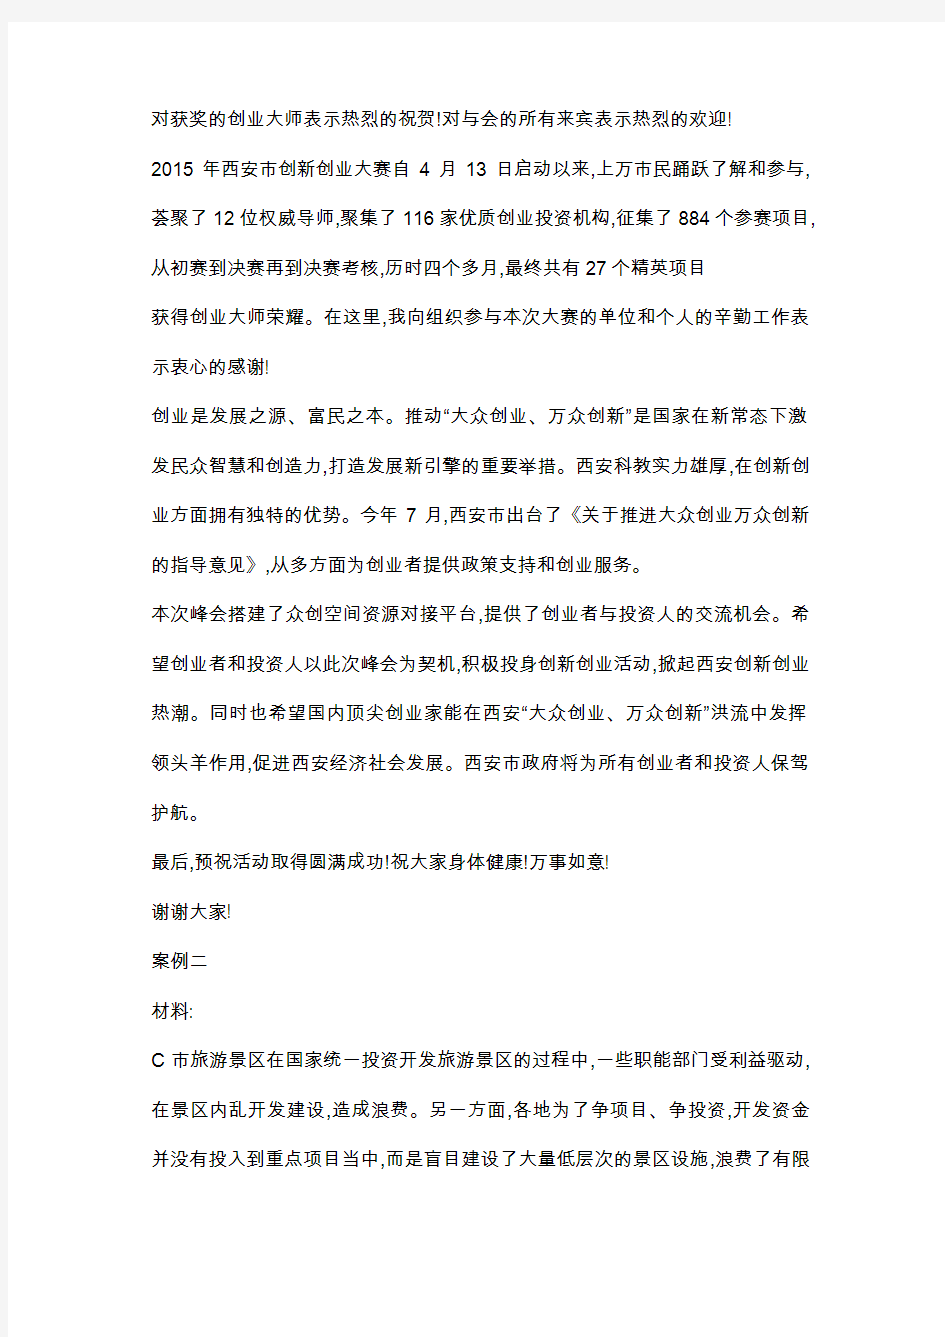 11、2015年10月25日广东省直机关公开遴选公务员笔试真题解析